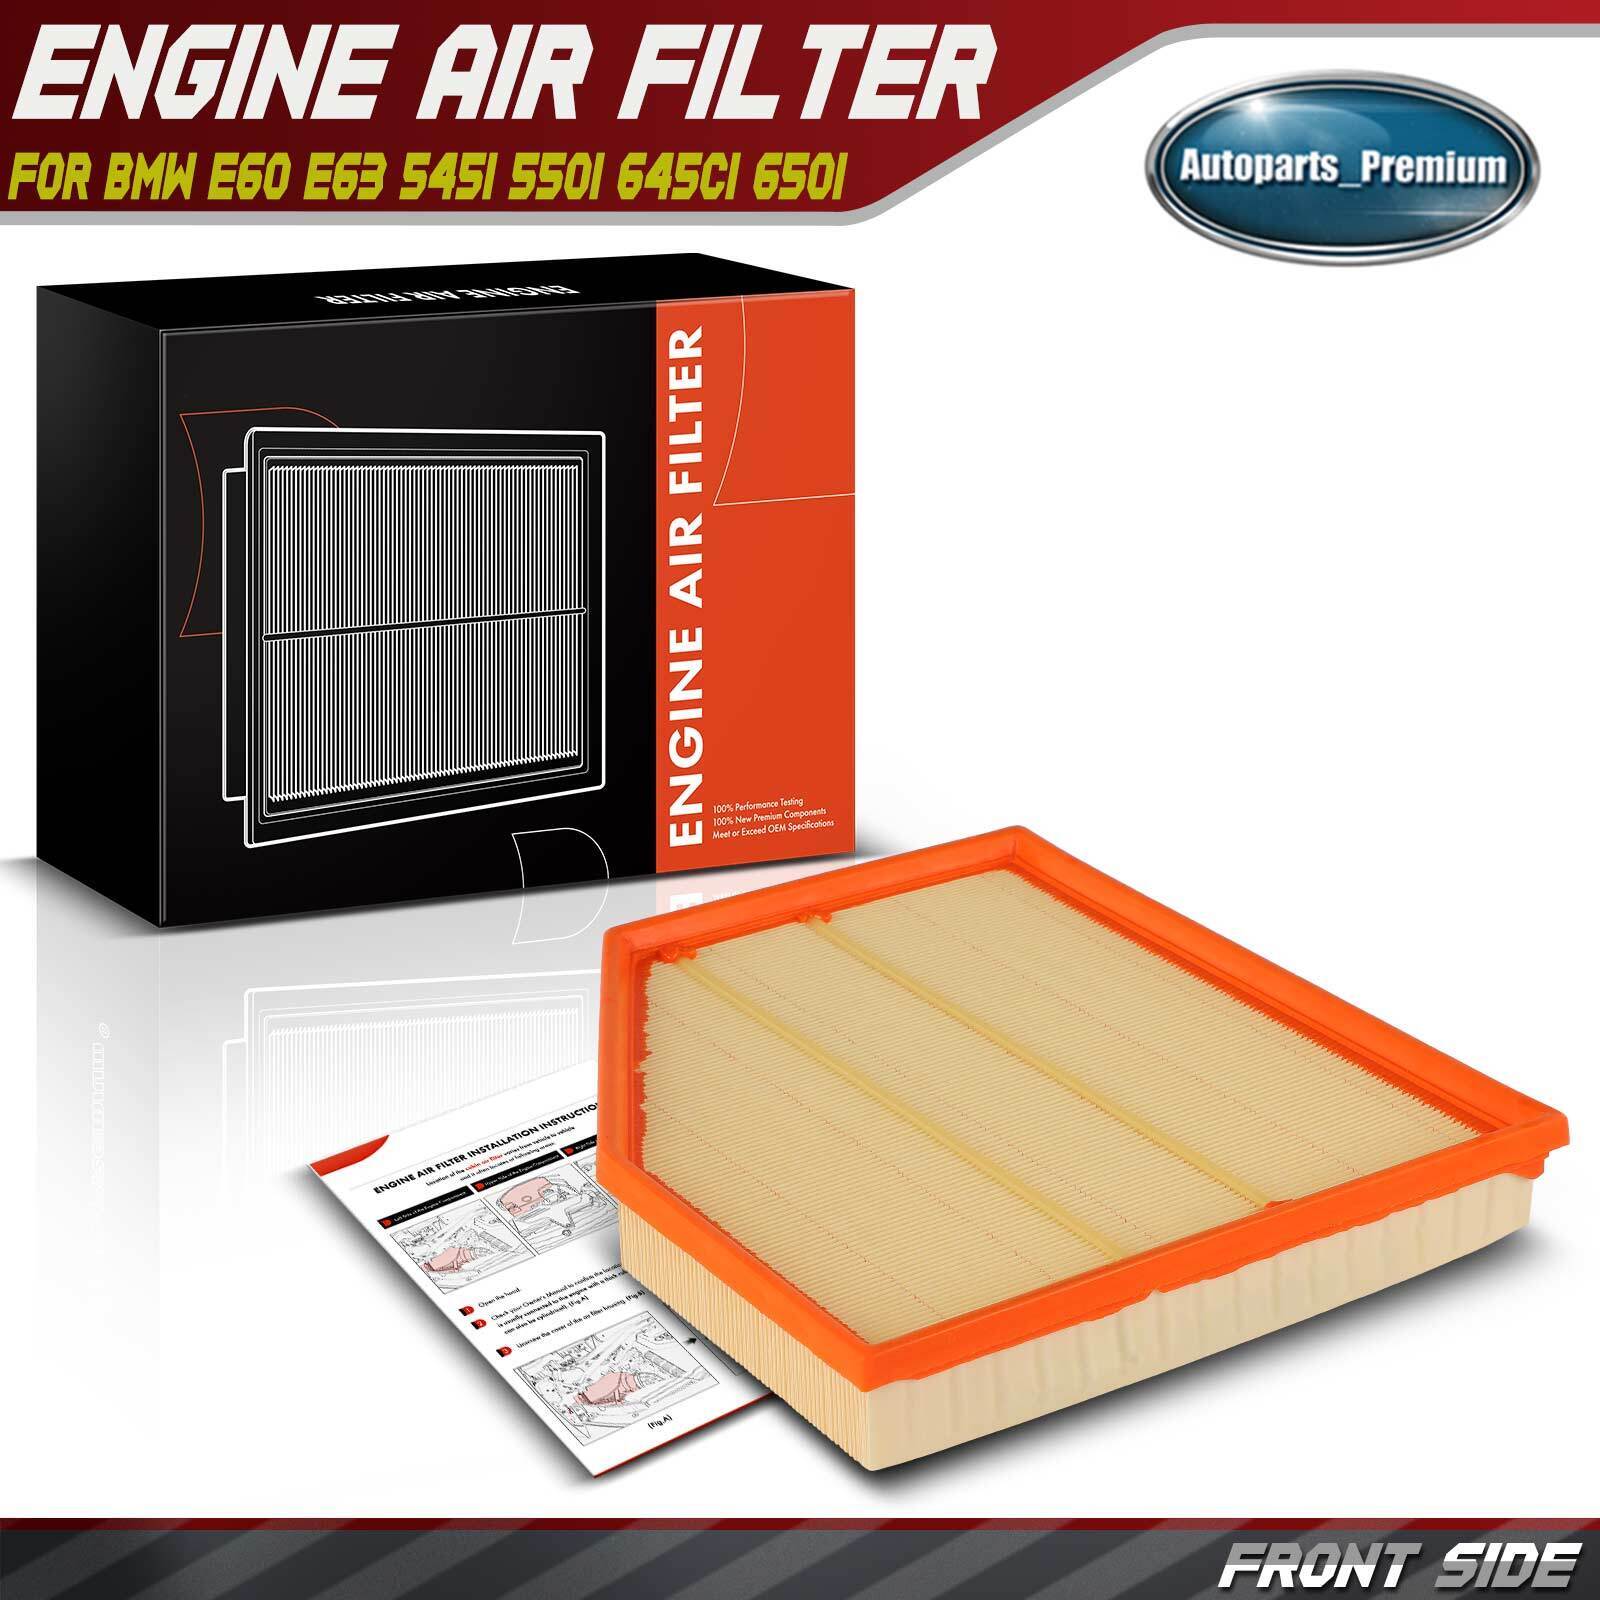 Engine Air Filter for BMW E60 E63 545i 550i 645Ci 650i V8 4.4L 4.8L 13717521023